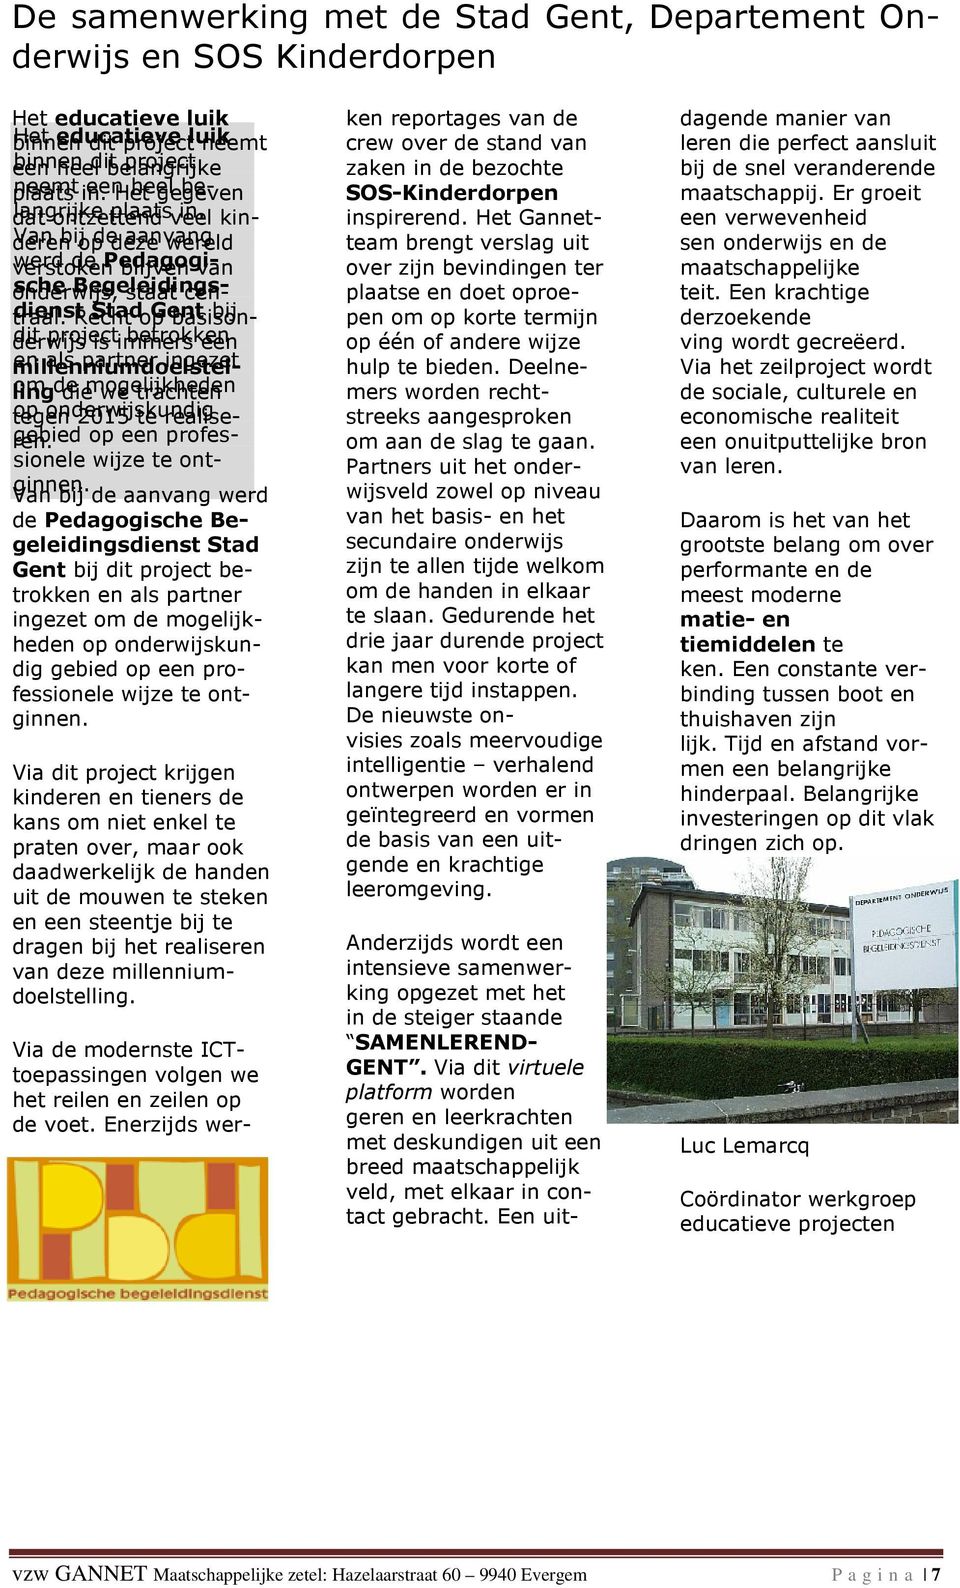 dienst Recht Stad op Gent basisonderwijs dit project is immers betrokken een bij millenniumdoelstel- als partner ingezet ling om de die mogelijkheden we trachten tegen op onderwijskundig 2015 te